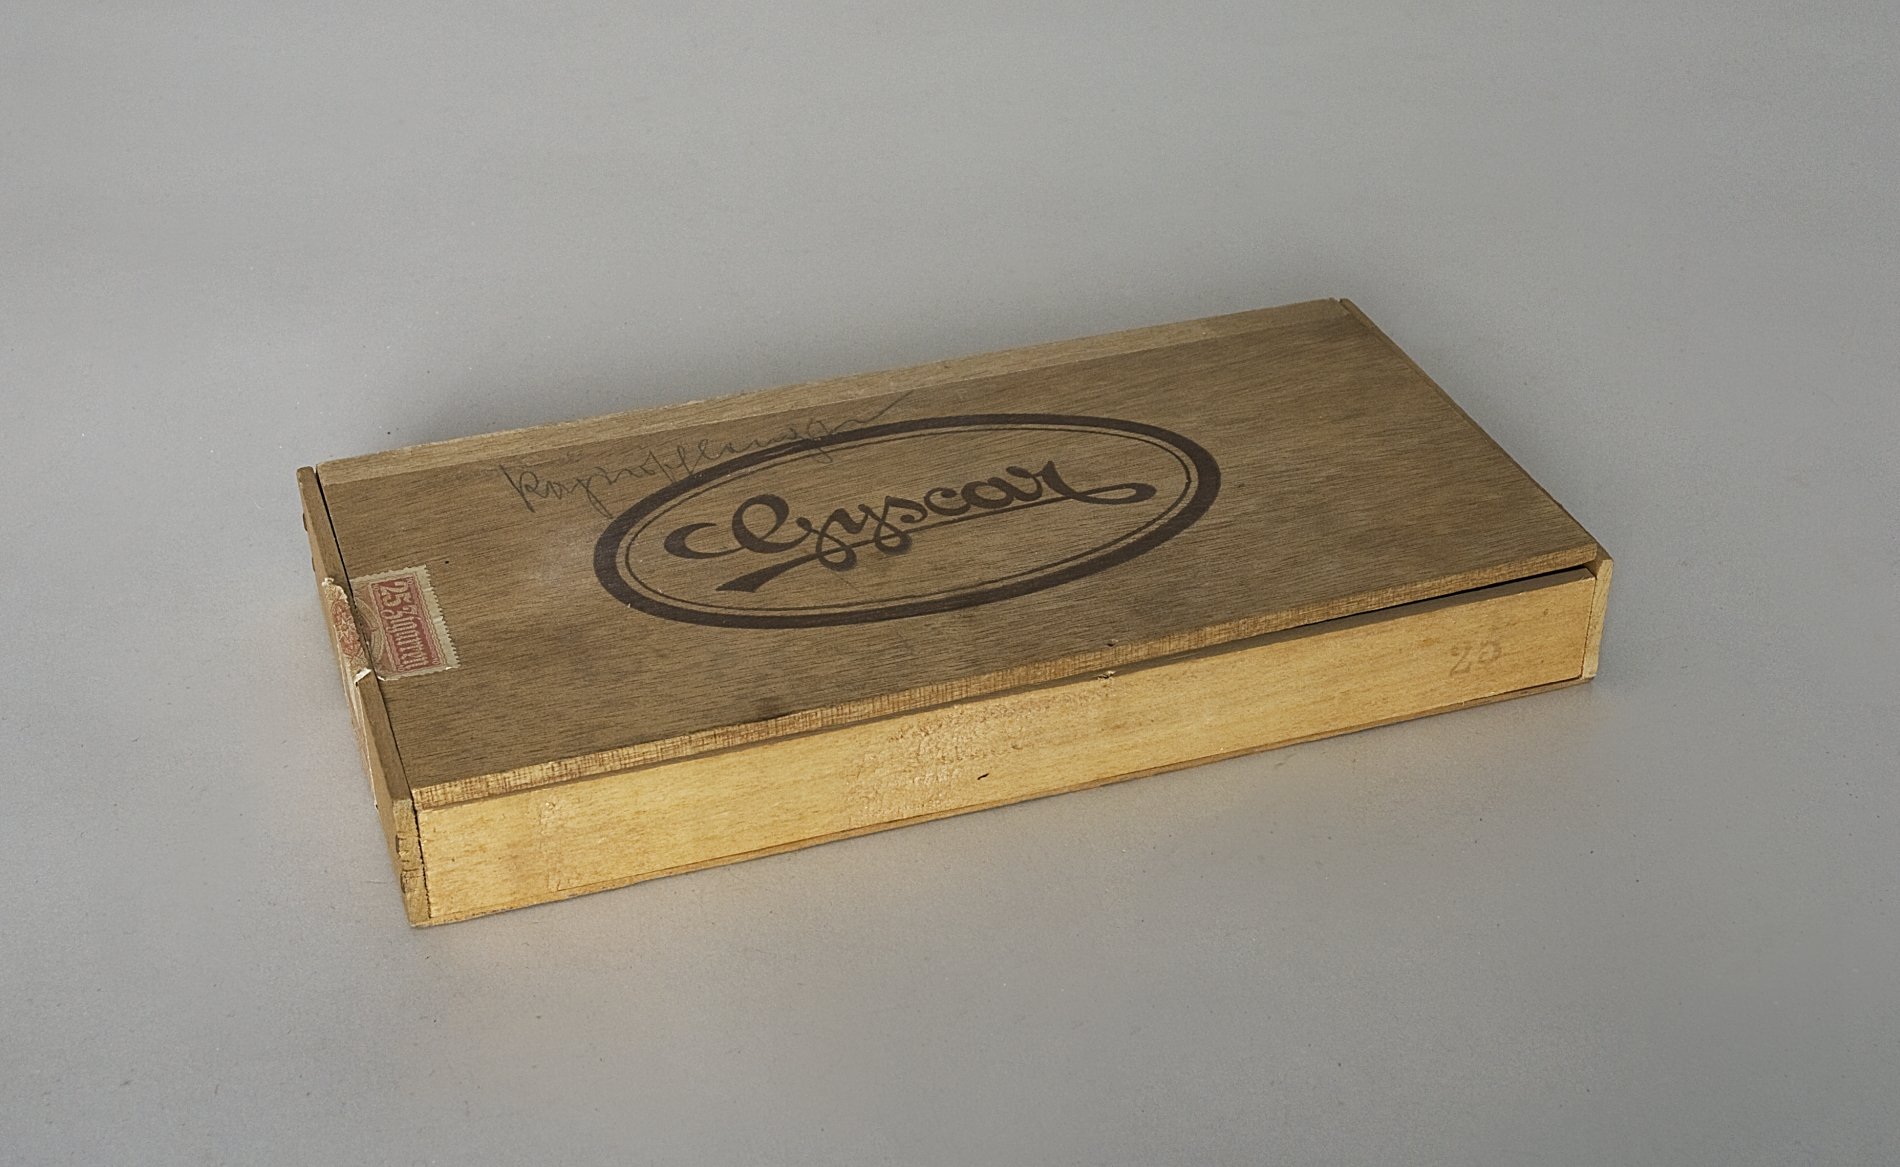 Zigarrenkiste "Gyscar" (Stiftung Domäne Dahlem - Landgut und Museum, Weiternutzung nur mit Genehmigung des Museums CC BY-NC-SA)